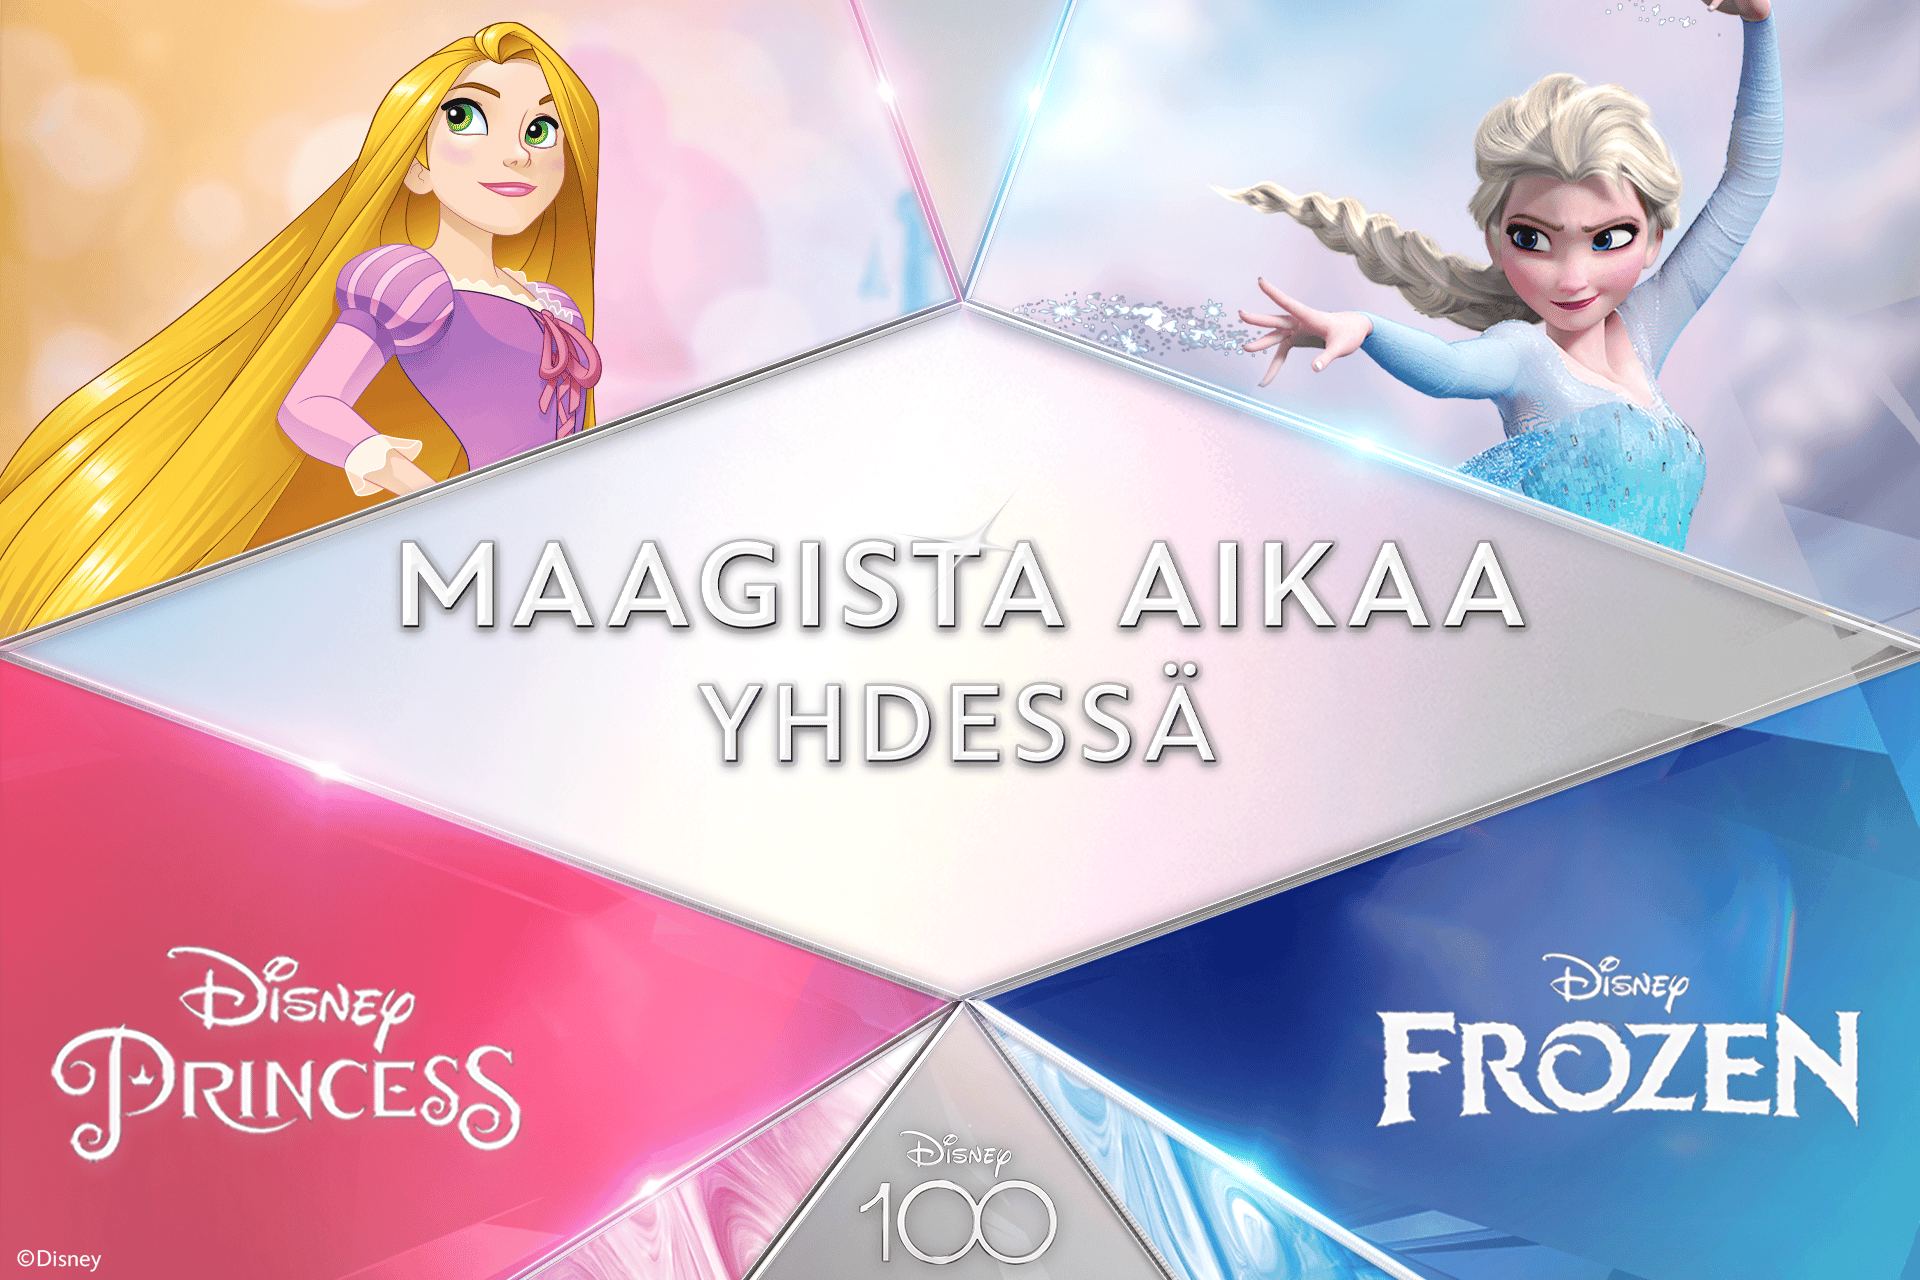 Maagista aikaa yhdessä. Disney Princess & Disney Frozen